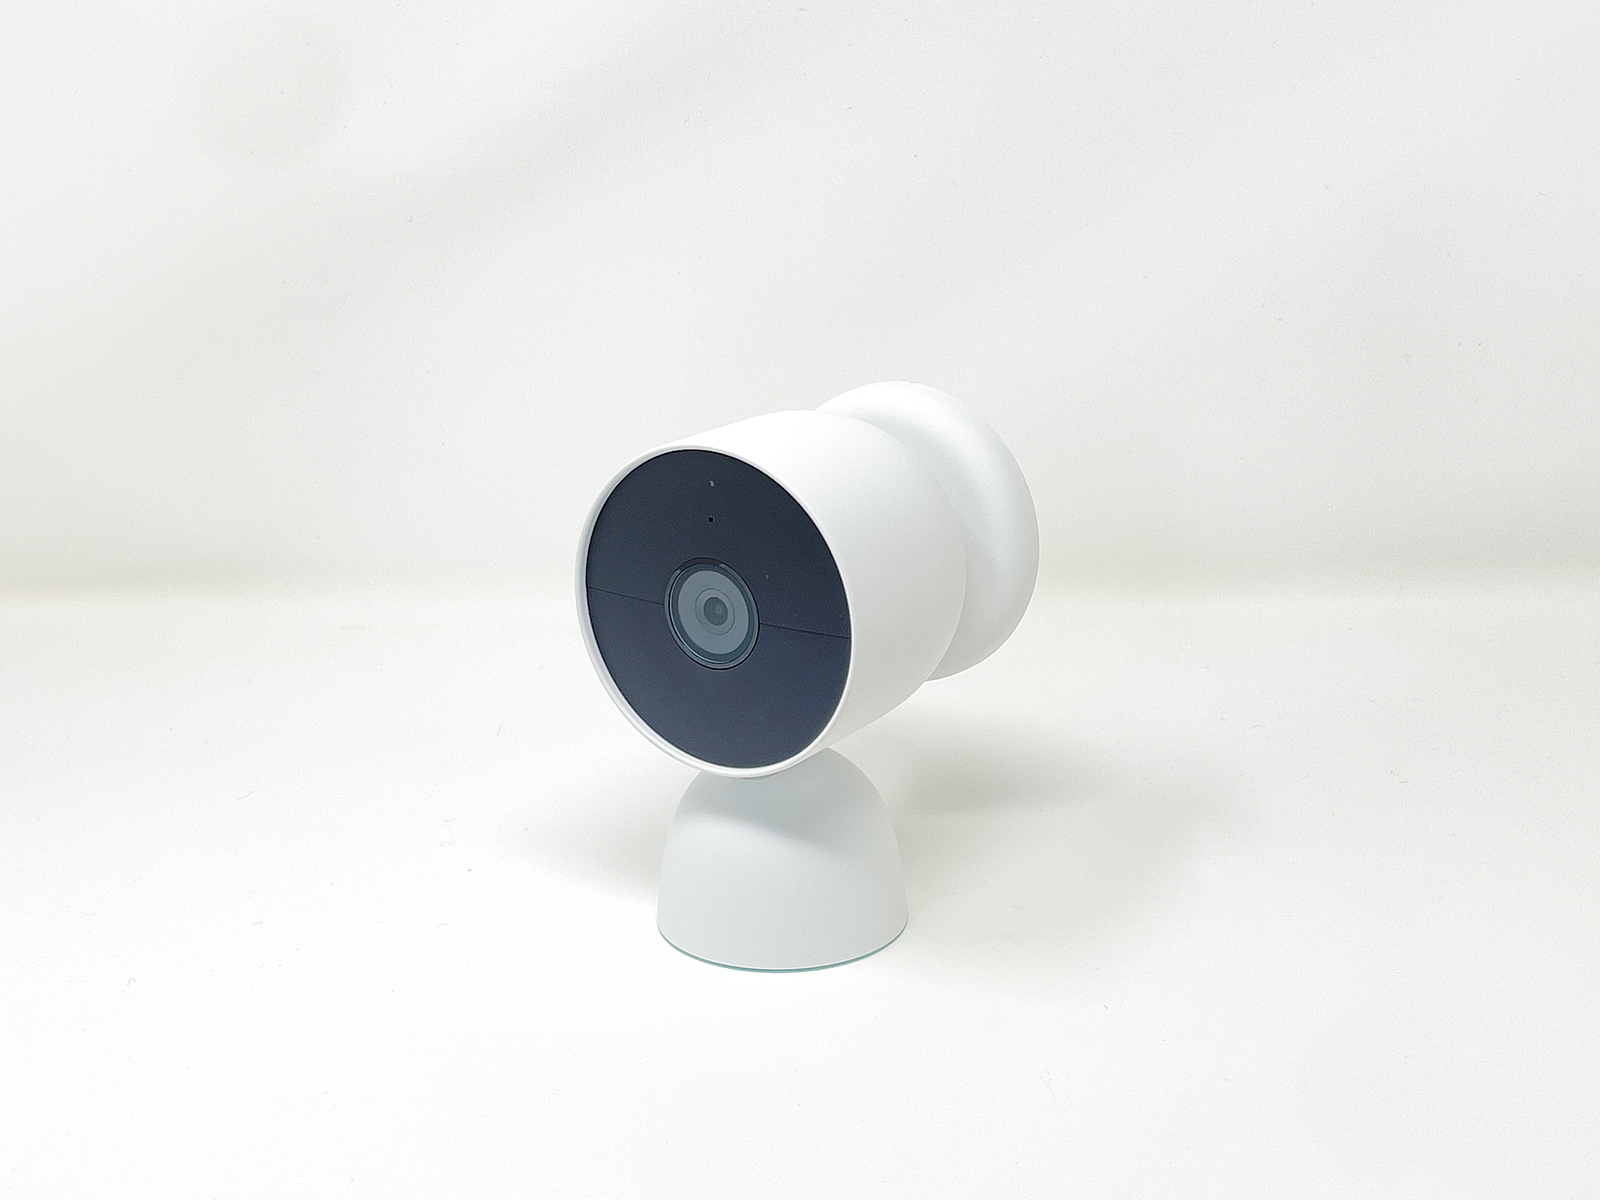 クラウドベースで自宅を見守れる「Google Nest Cam」シリーズ